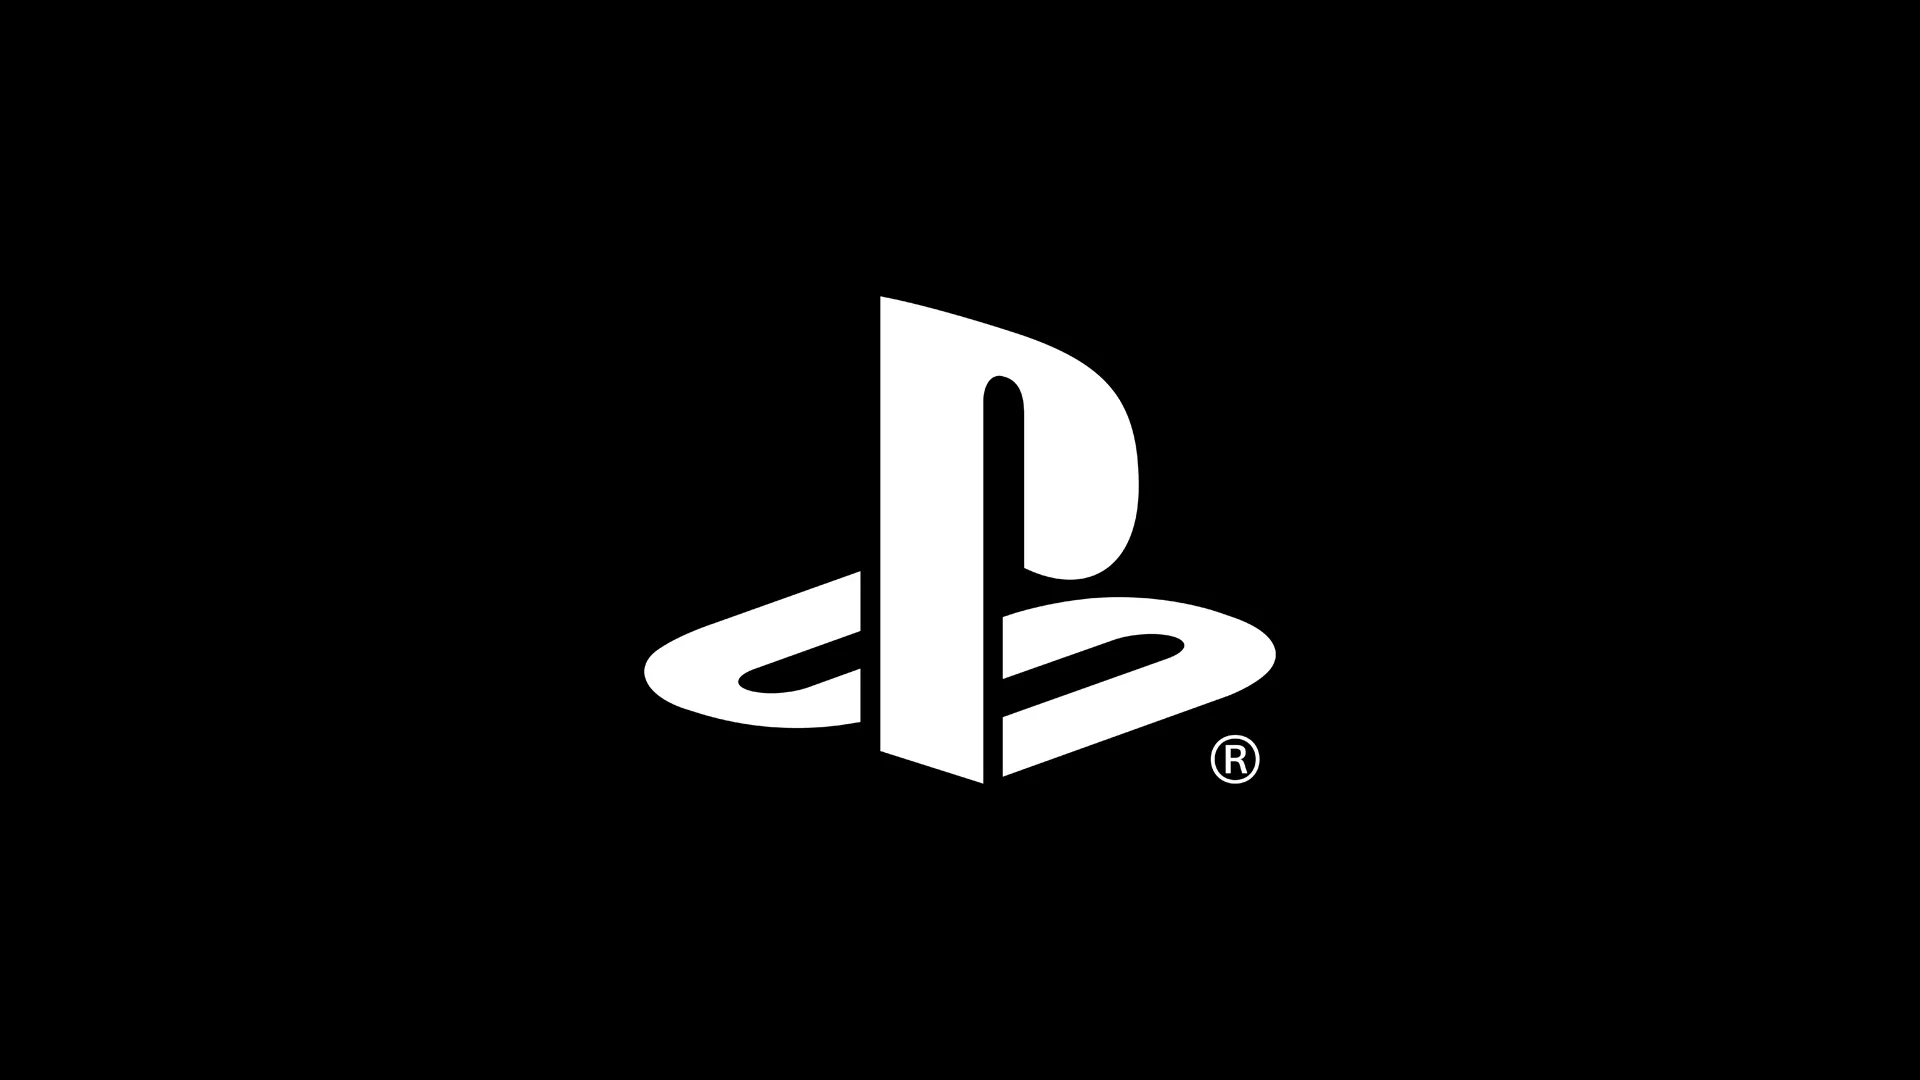 Sony planen den PlayStation Store zu überarbeiten Heropic